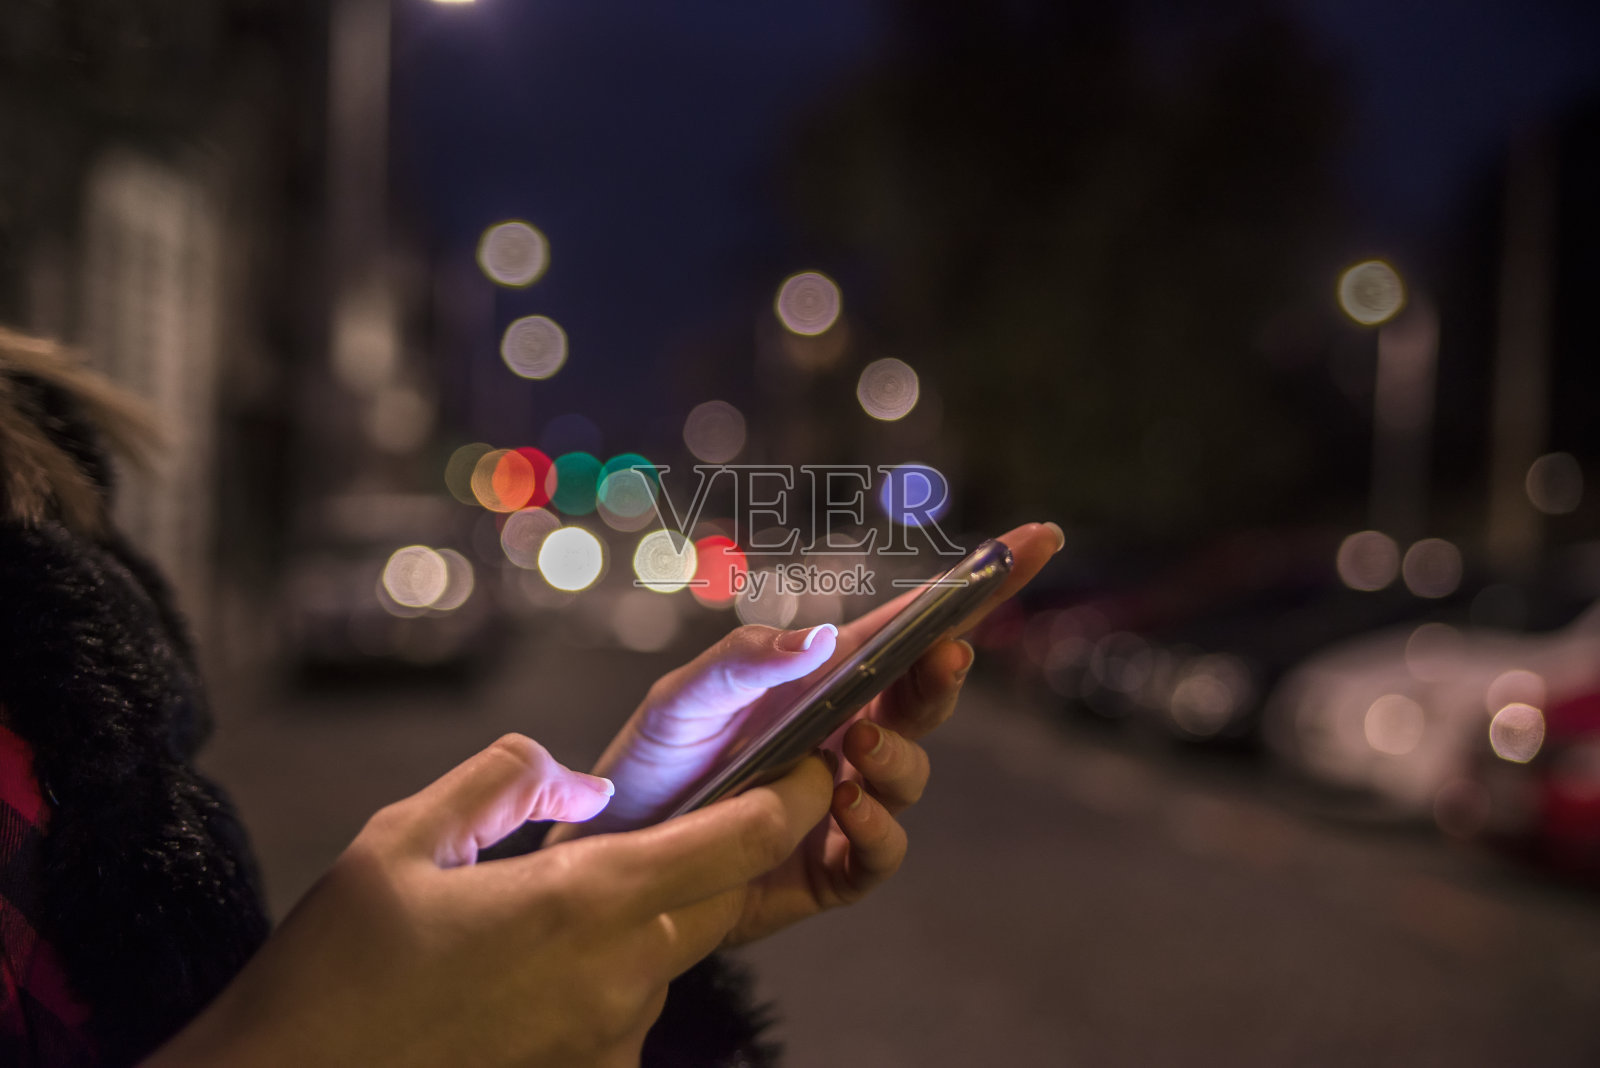 女性手握手机触摸屏上模糊不清的夜灯照片摄影图片